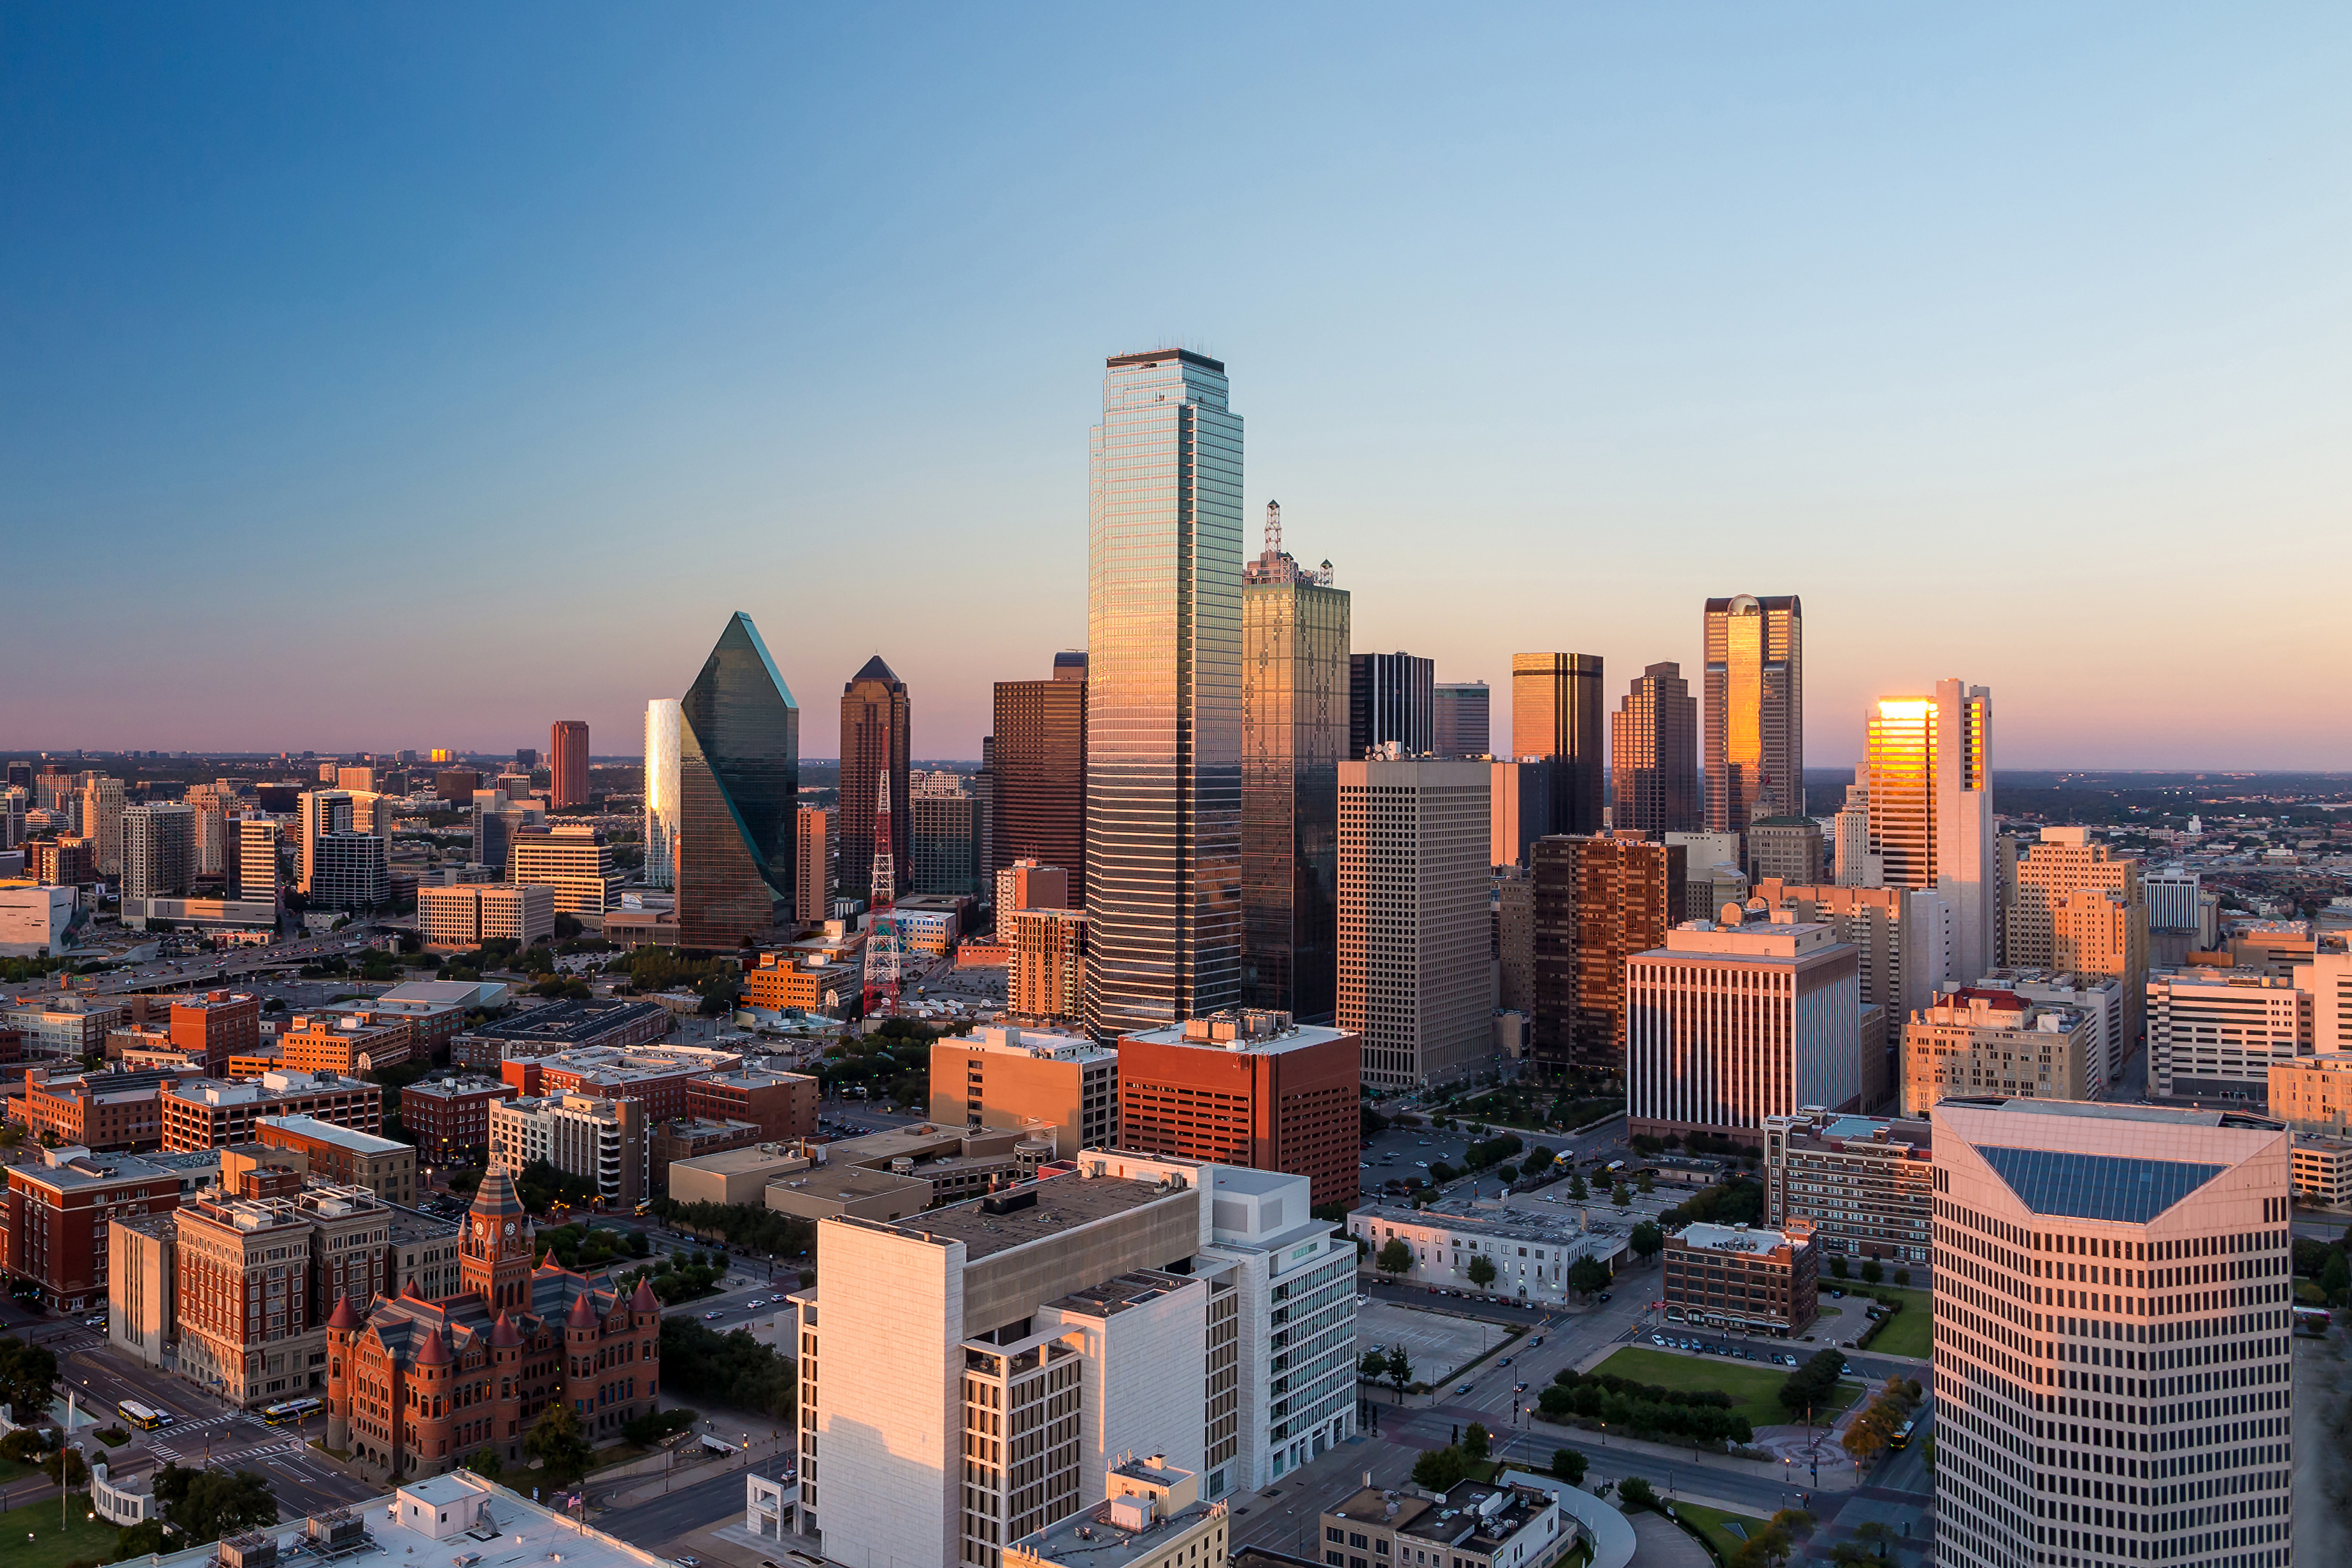 Evoque Colocation Data Center Spotlight: Dallas